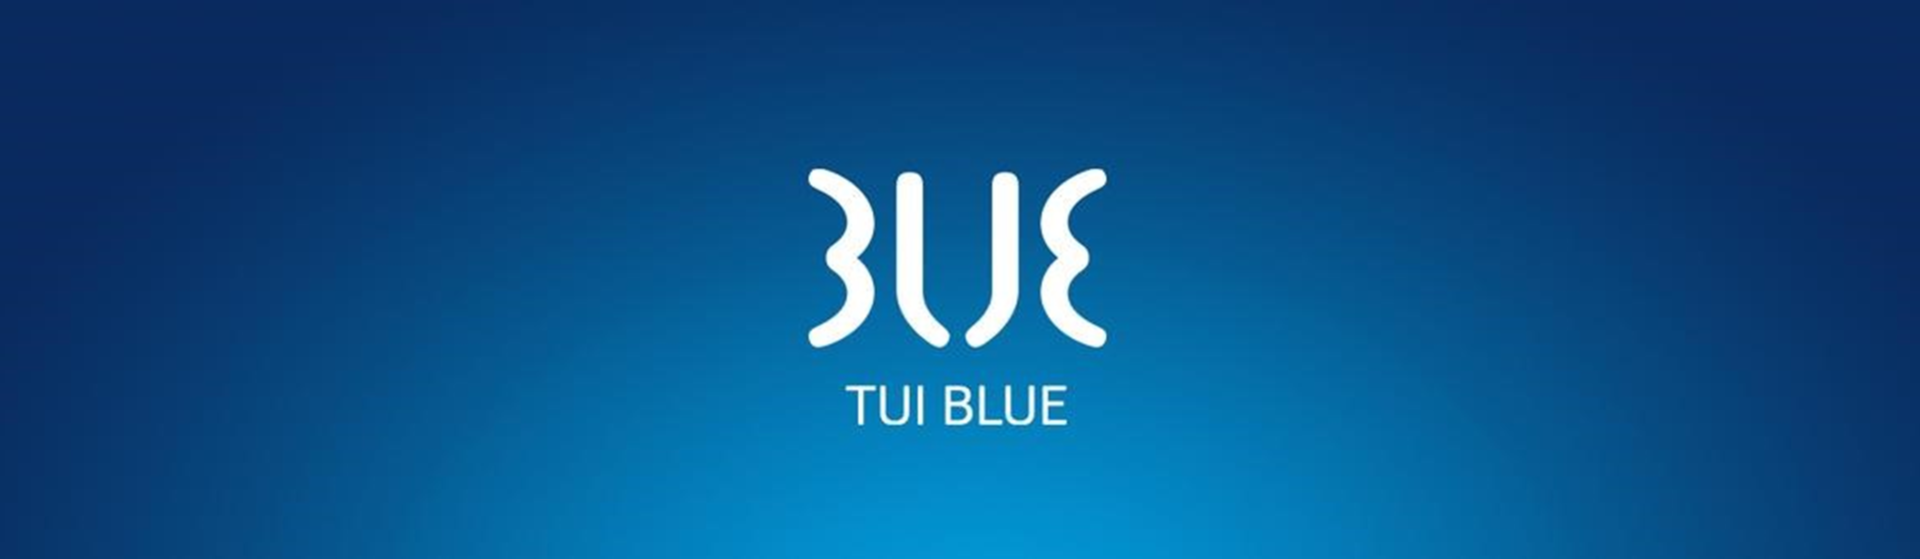 TUI_BLUE2